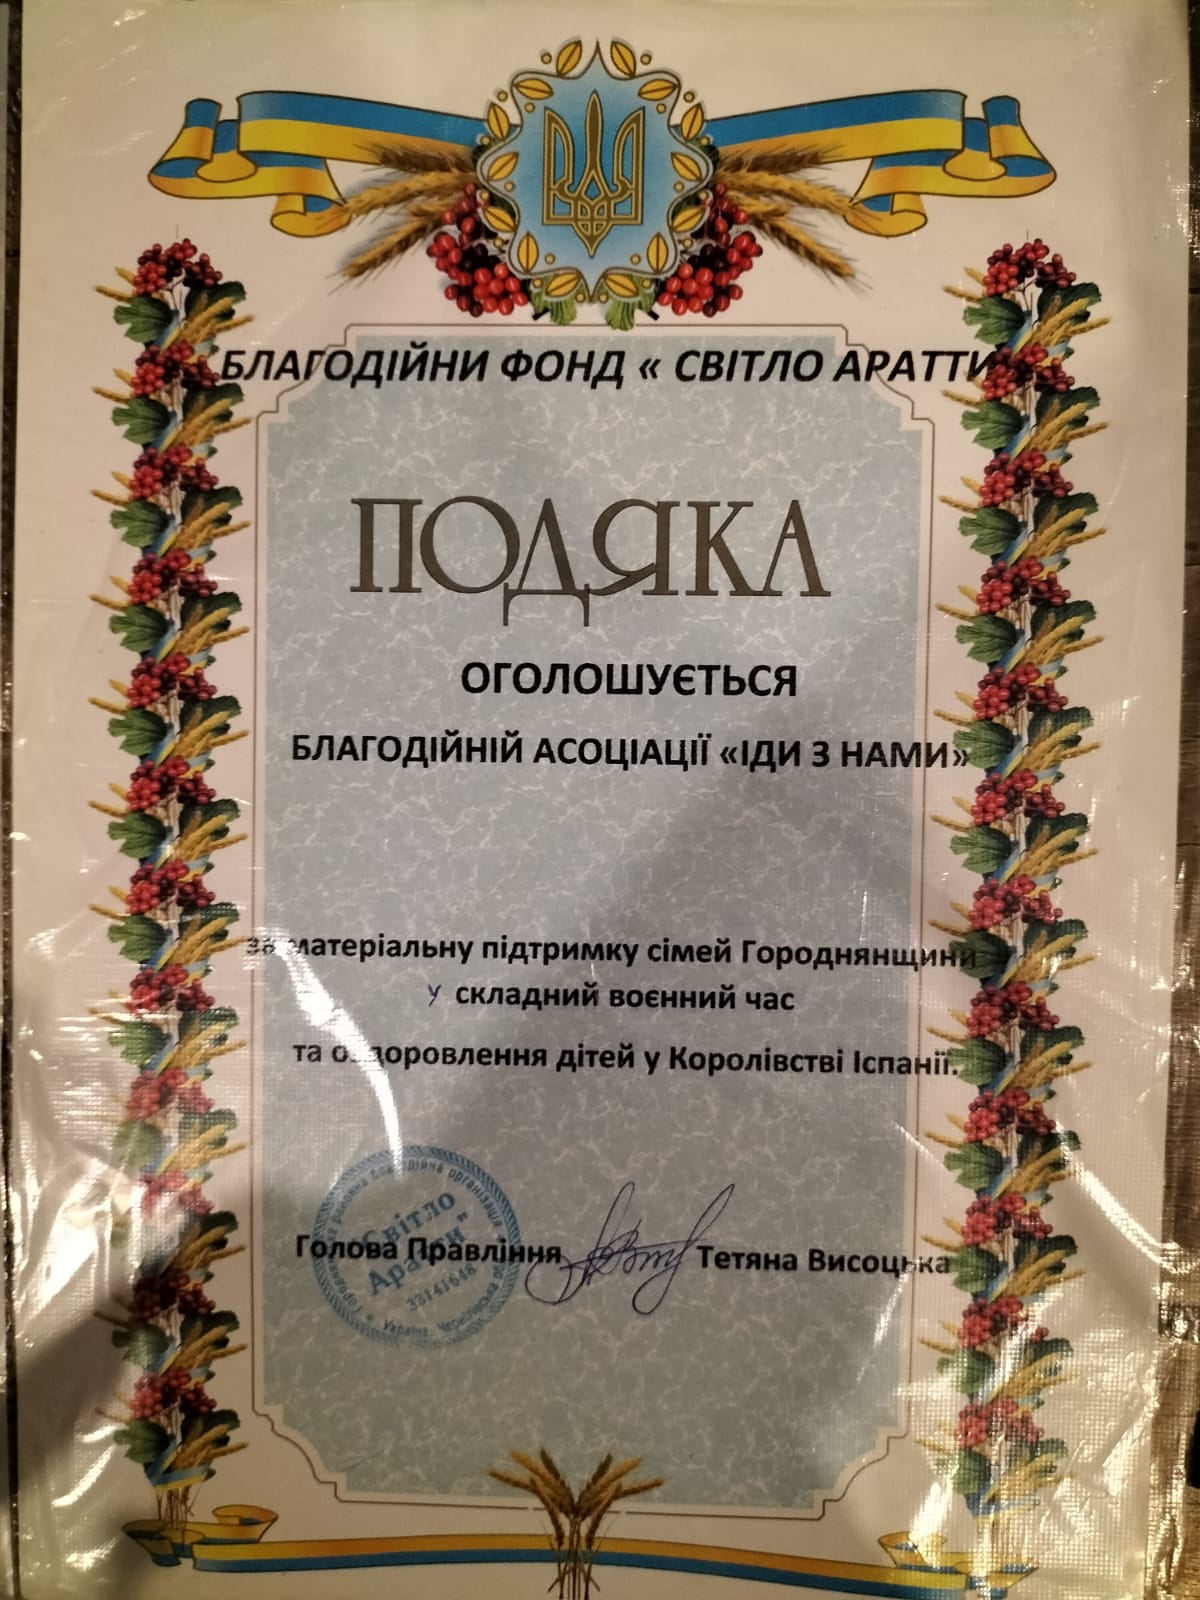 Diploma entregado por la ONG “Luz de Aratta” como muestra de agradecimiento por nuestra labor y la ayuda prestada por la ONG Ven Con Nosotros